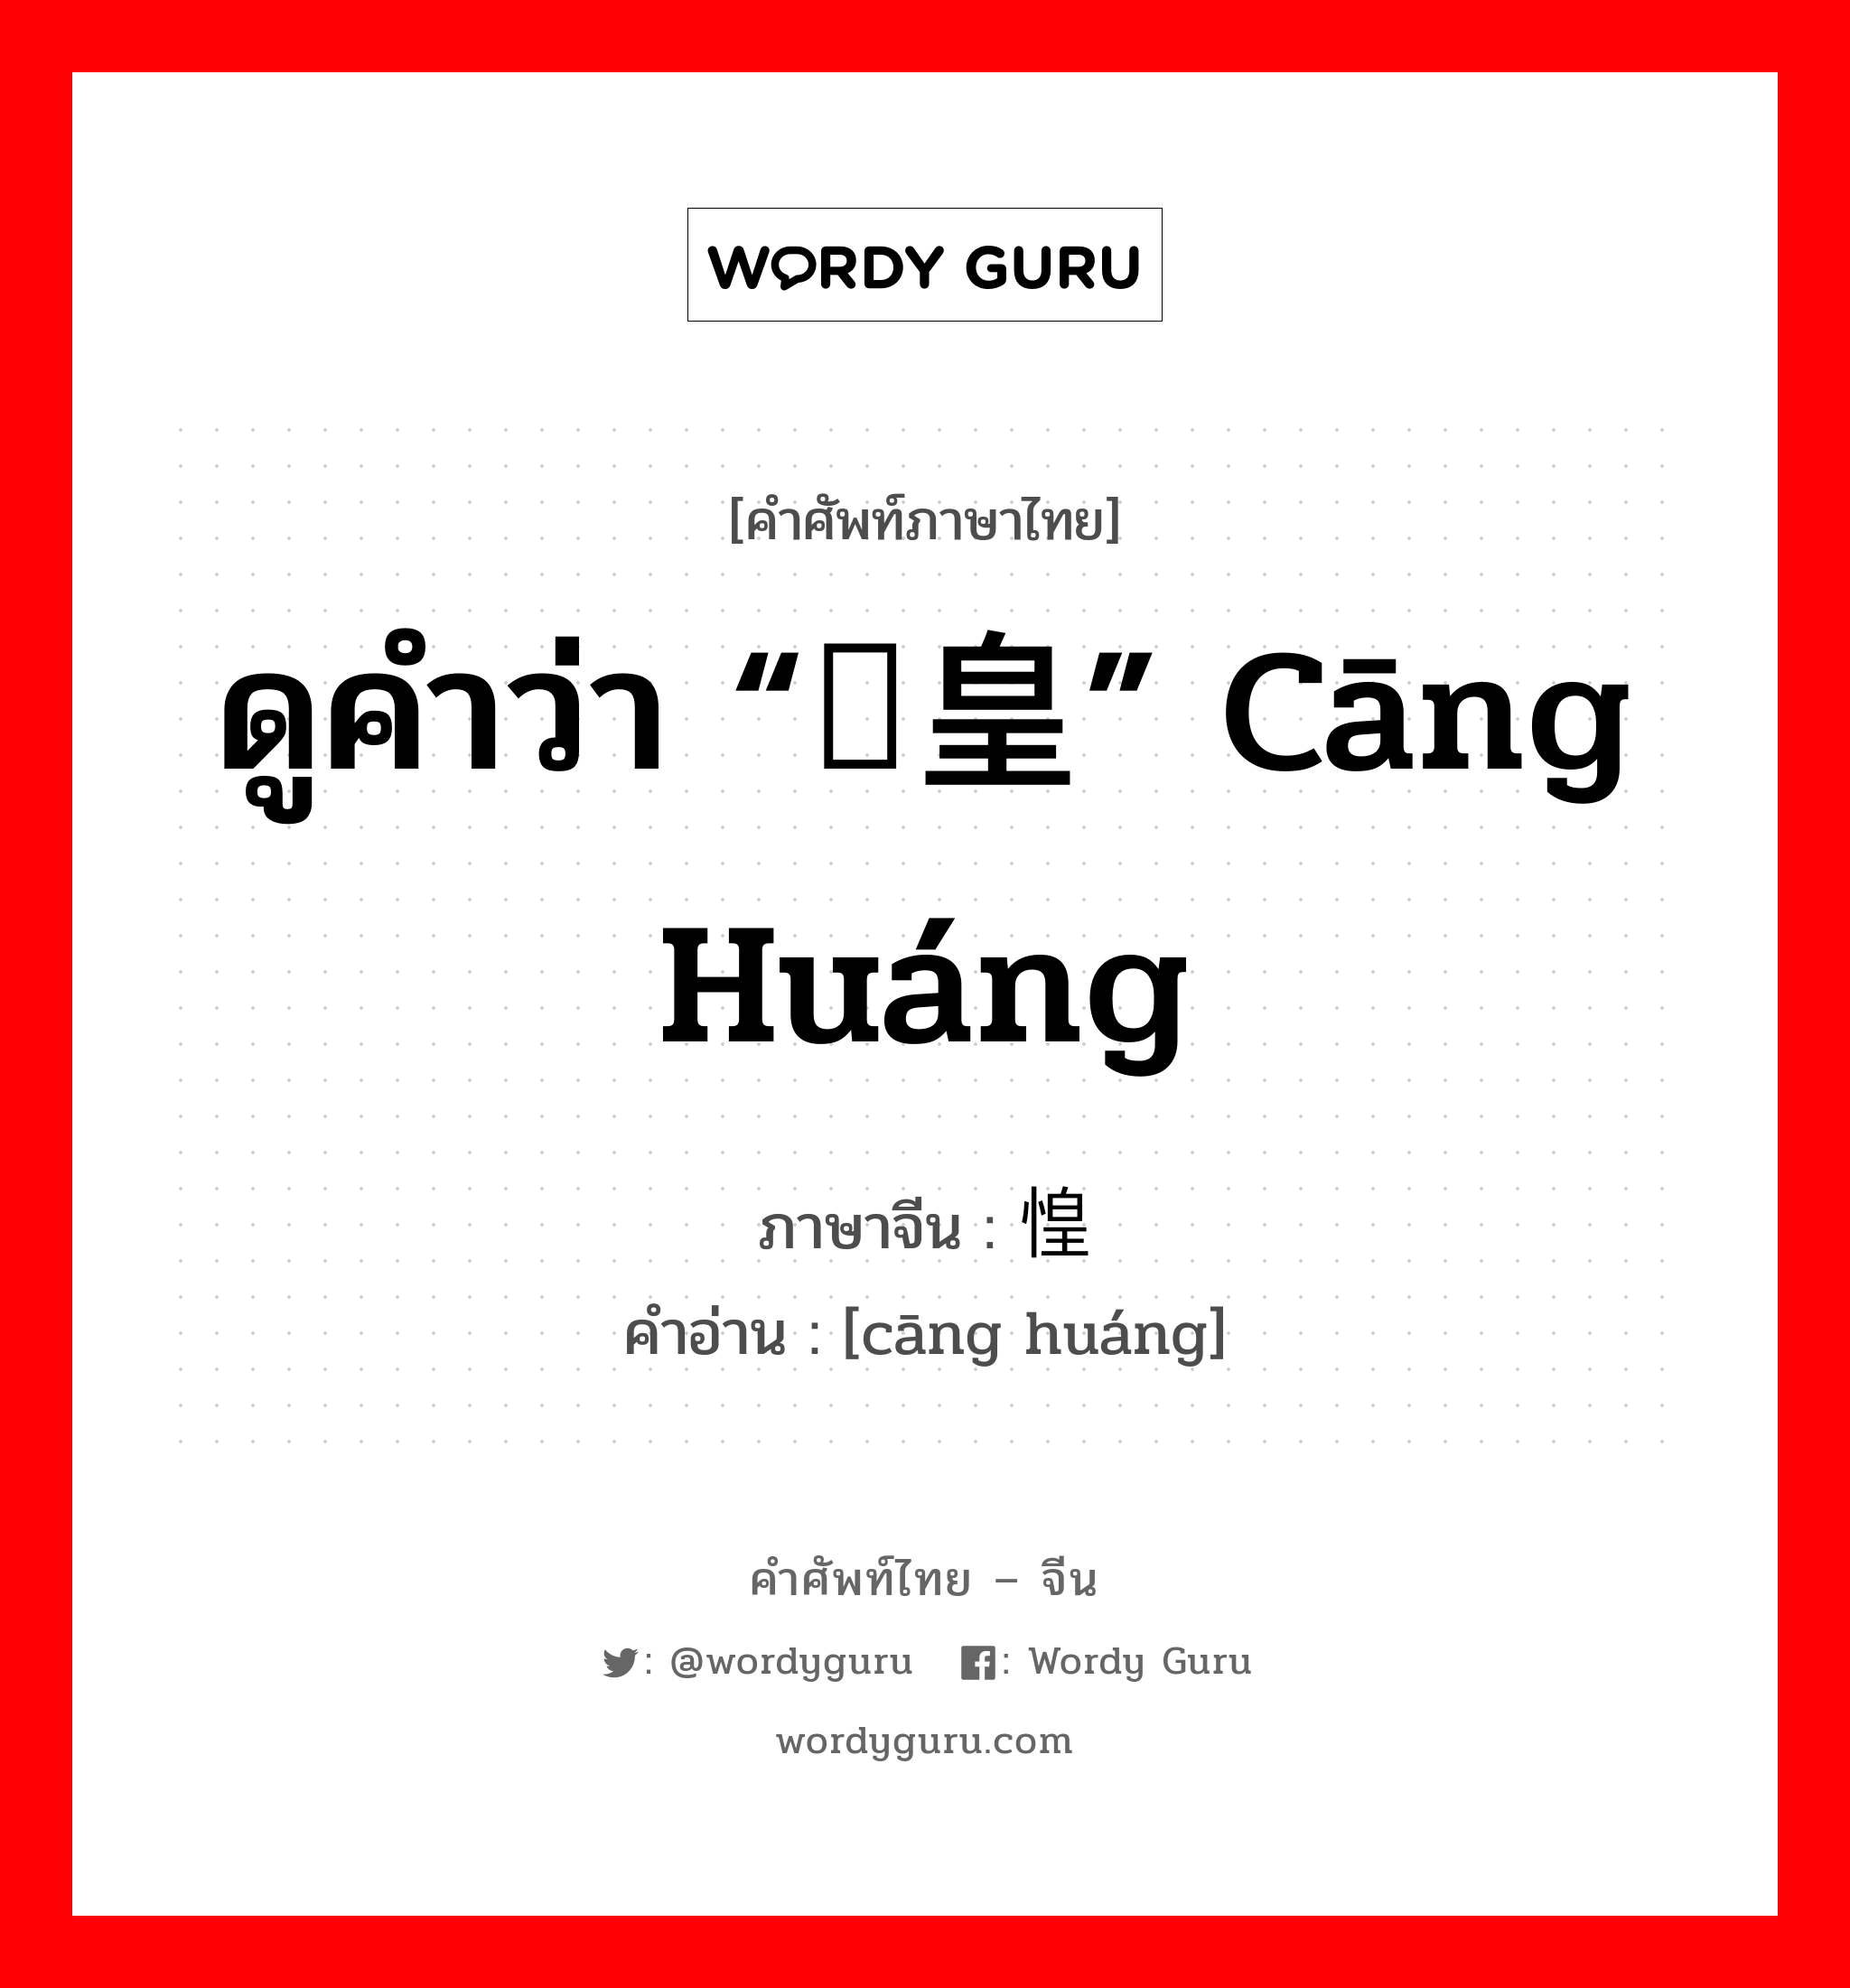 ดูคำว่า “仓皇” cāng huáng ภาษาจีนคืออะไร, คำศัพท์ภาษาไทย - จีน ดูคำว่า “仓皇” cāng huáng ภาษาจีน 仓惶 คำอ่าน [cāng huáng]